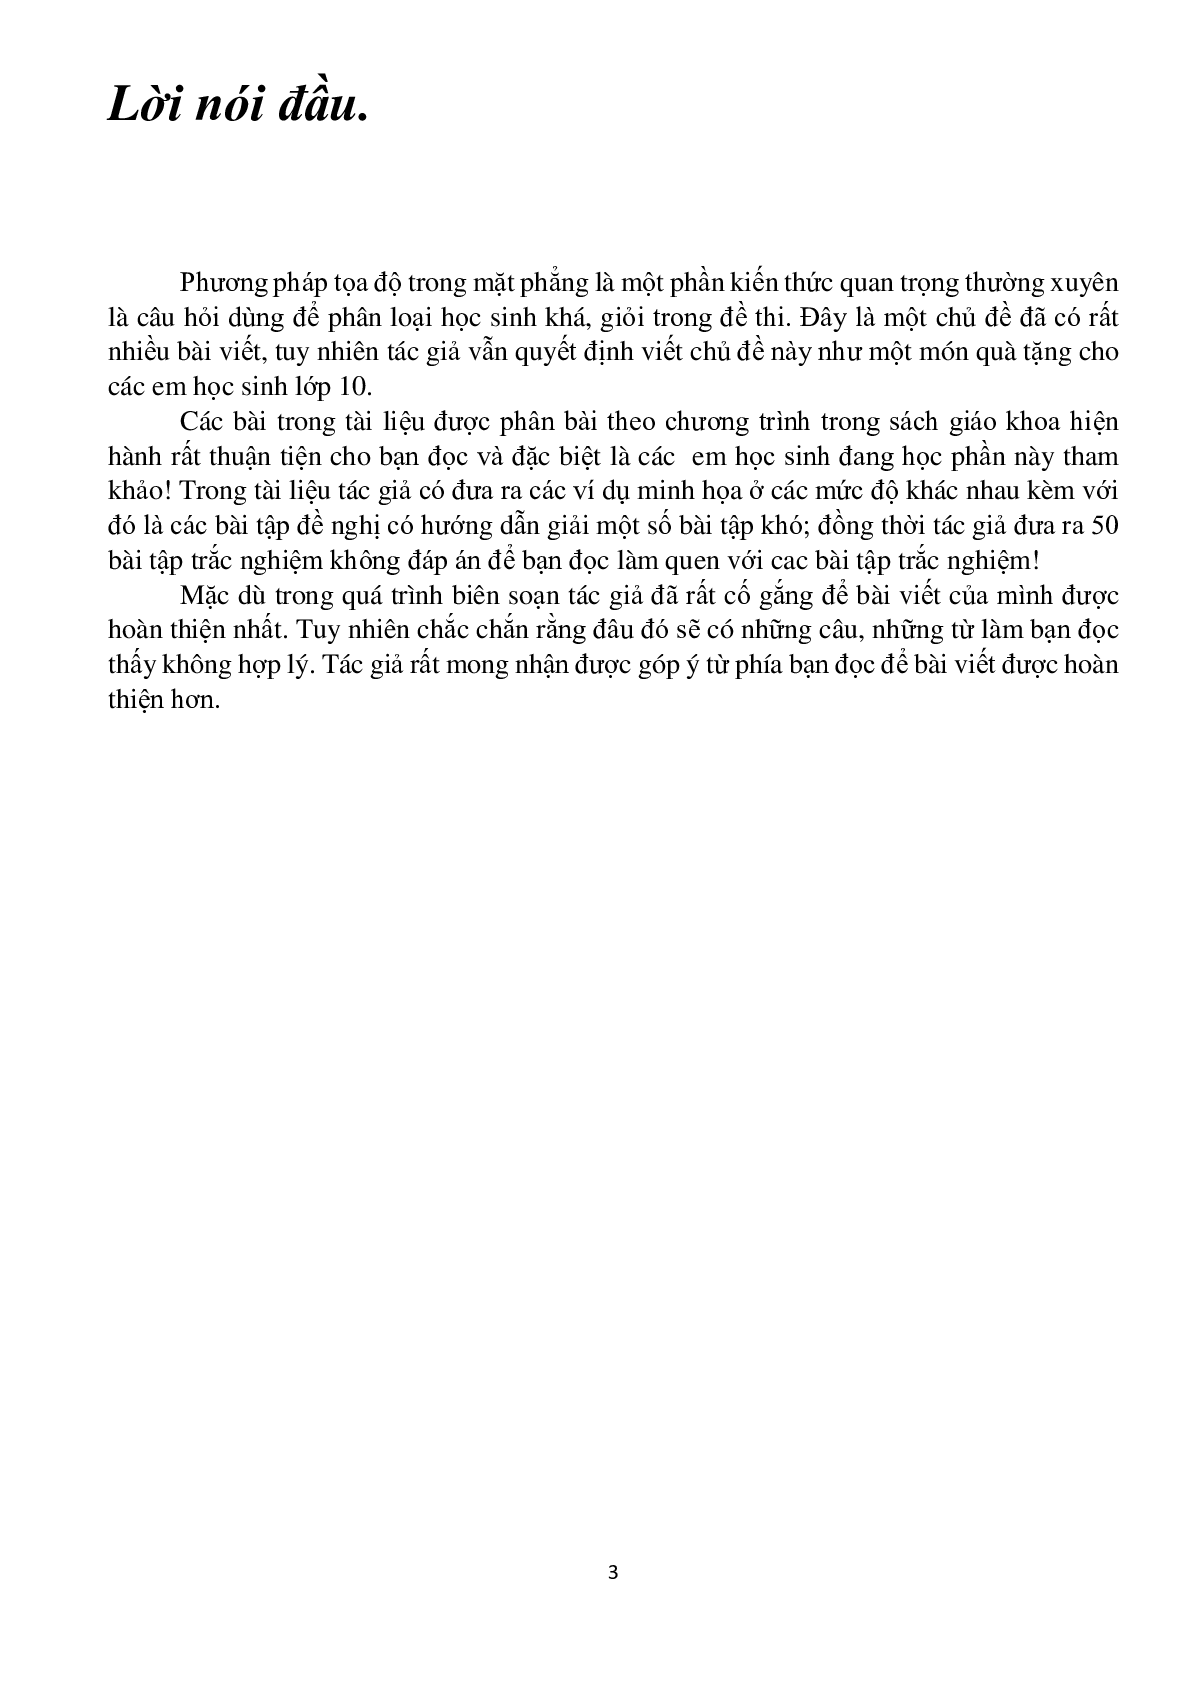 Chuyên đề phương pháp tọa độ trong mặt phẳng - Nguyễn Bá Hoàng (trang 3)